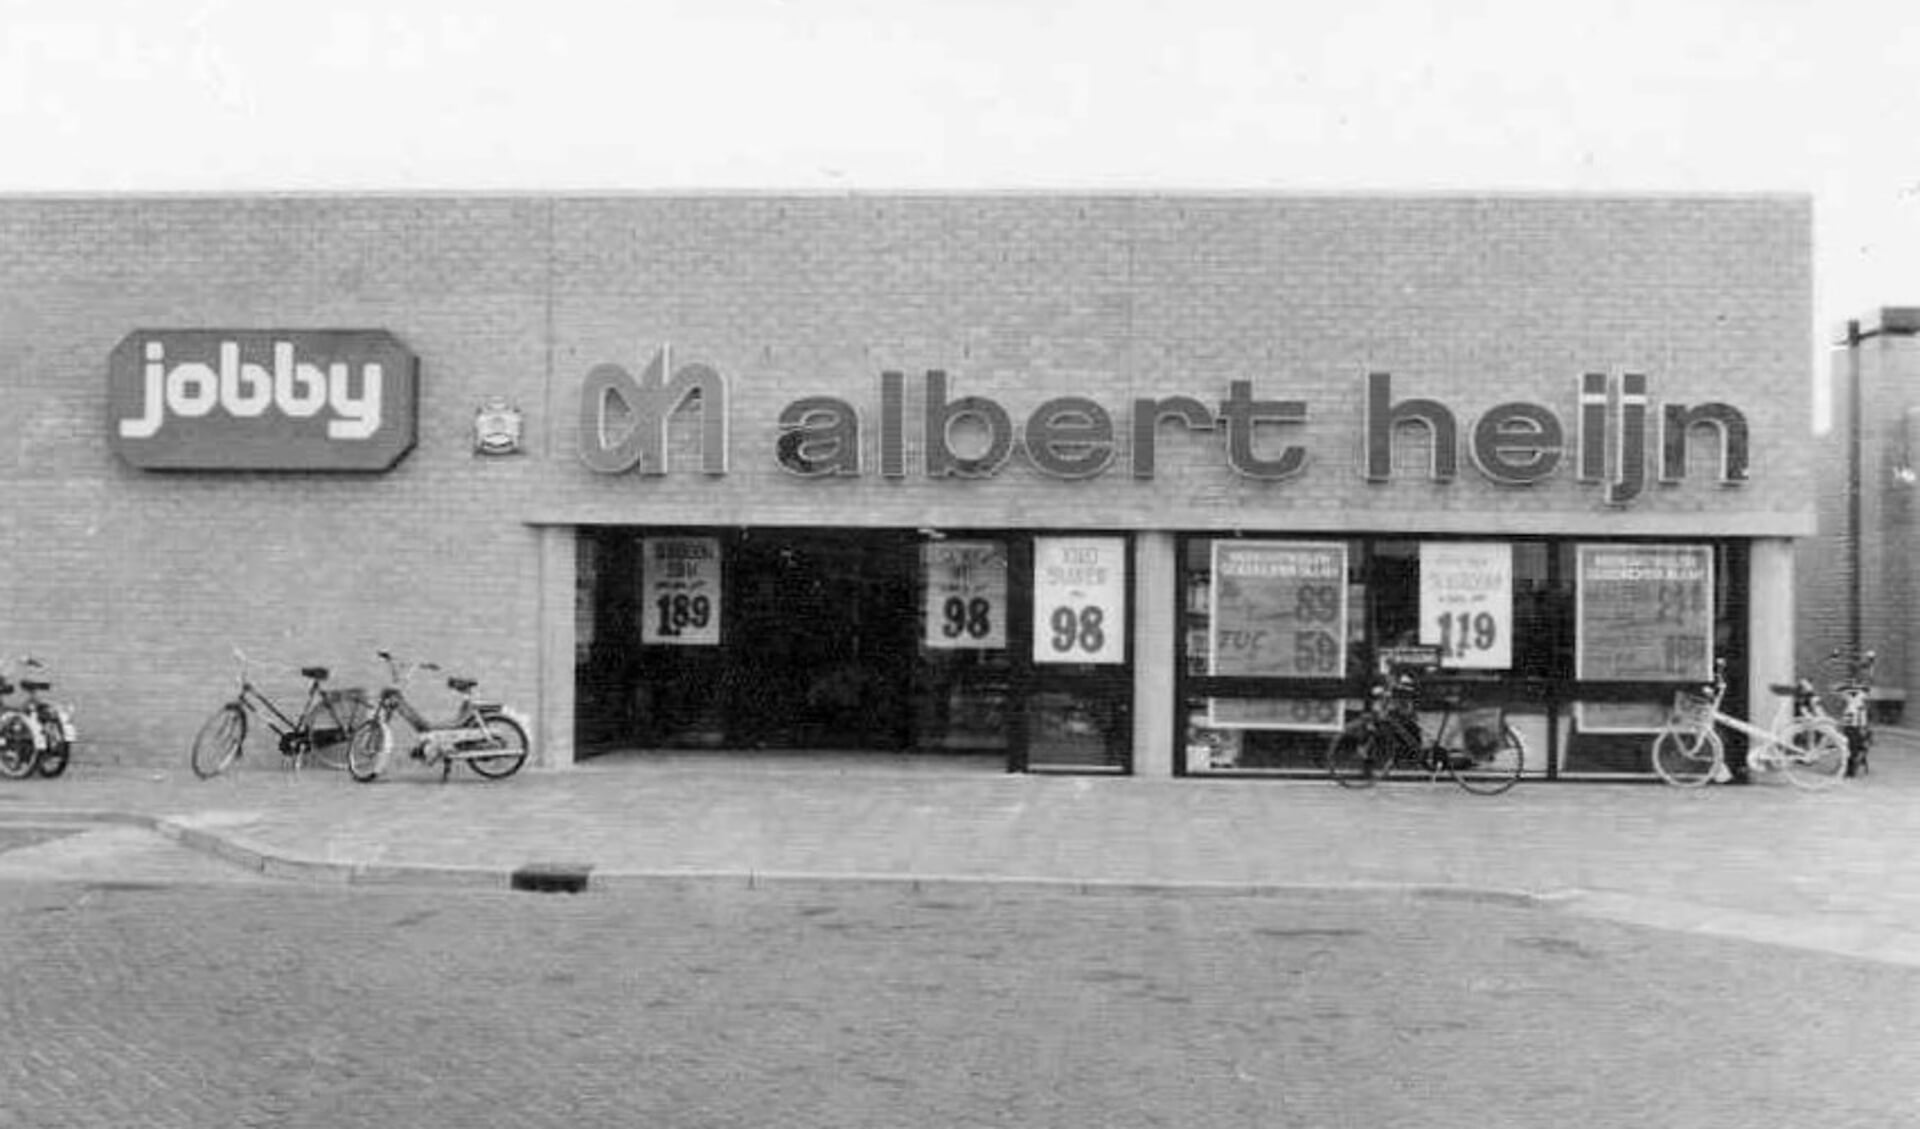 Albert Heijn Walburg in de begintijd. Dit beeld is afkomstig van Stichting Albert Heijn Erfgoed: https://albertheijnerfgoed.nl/